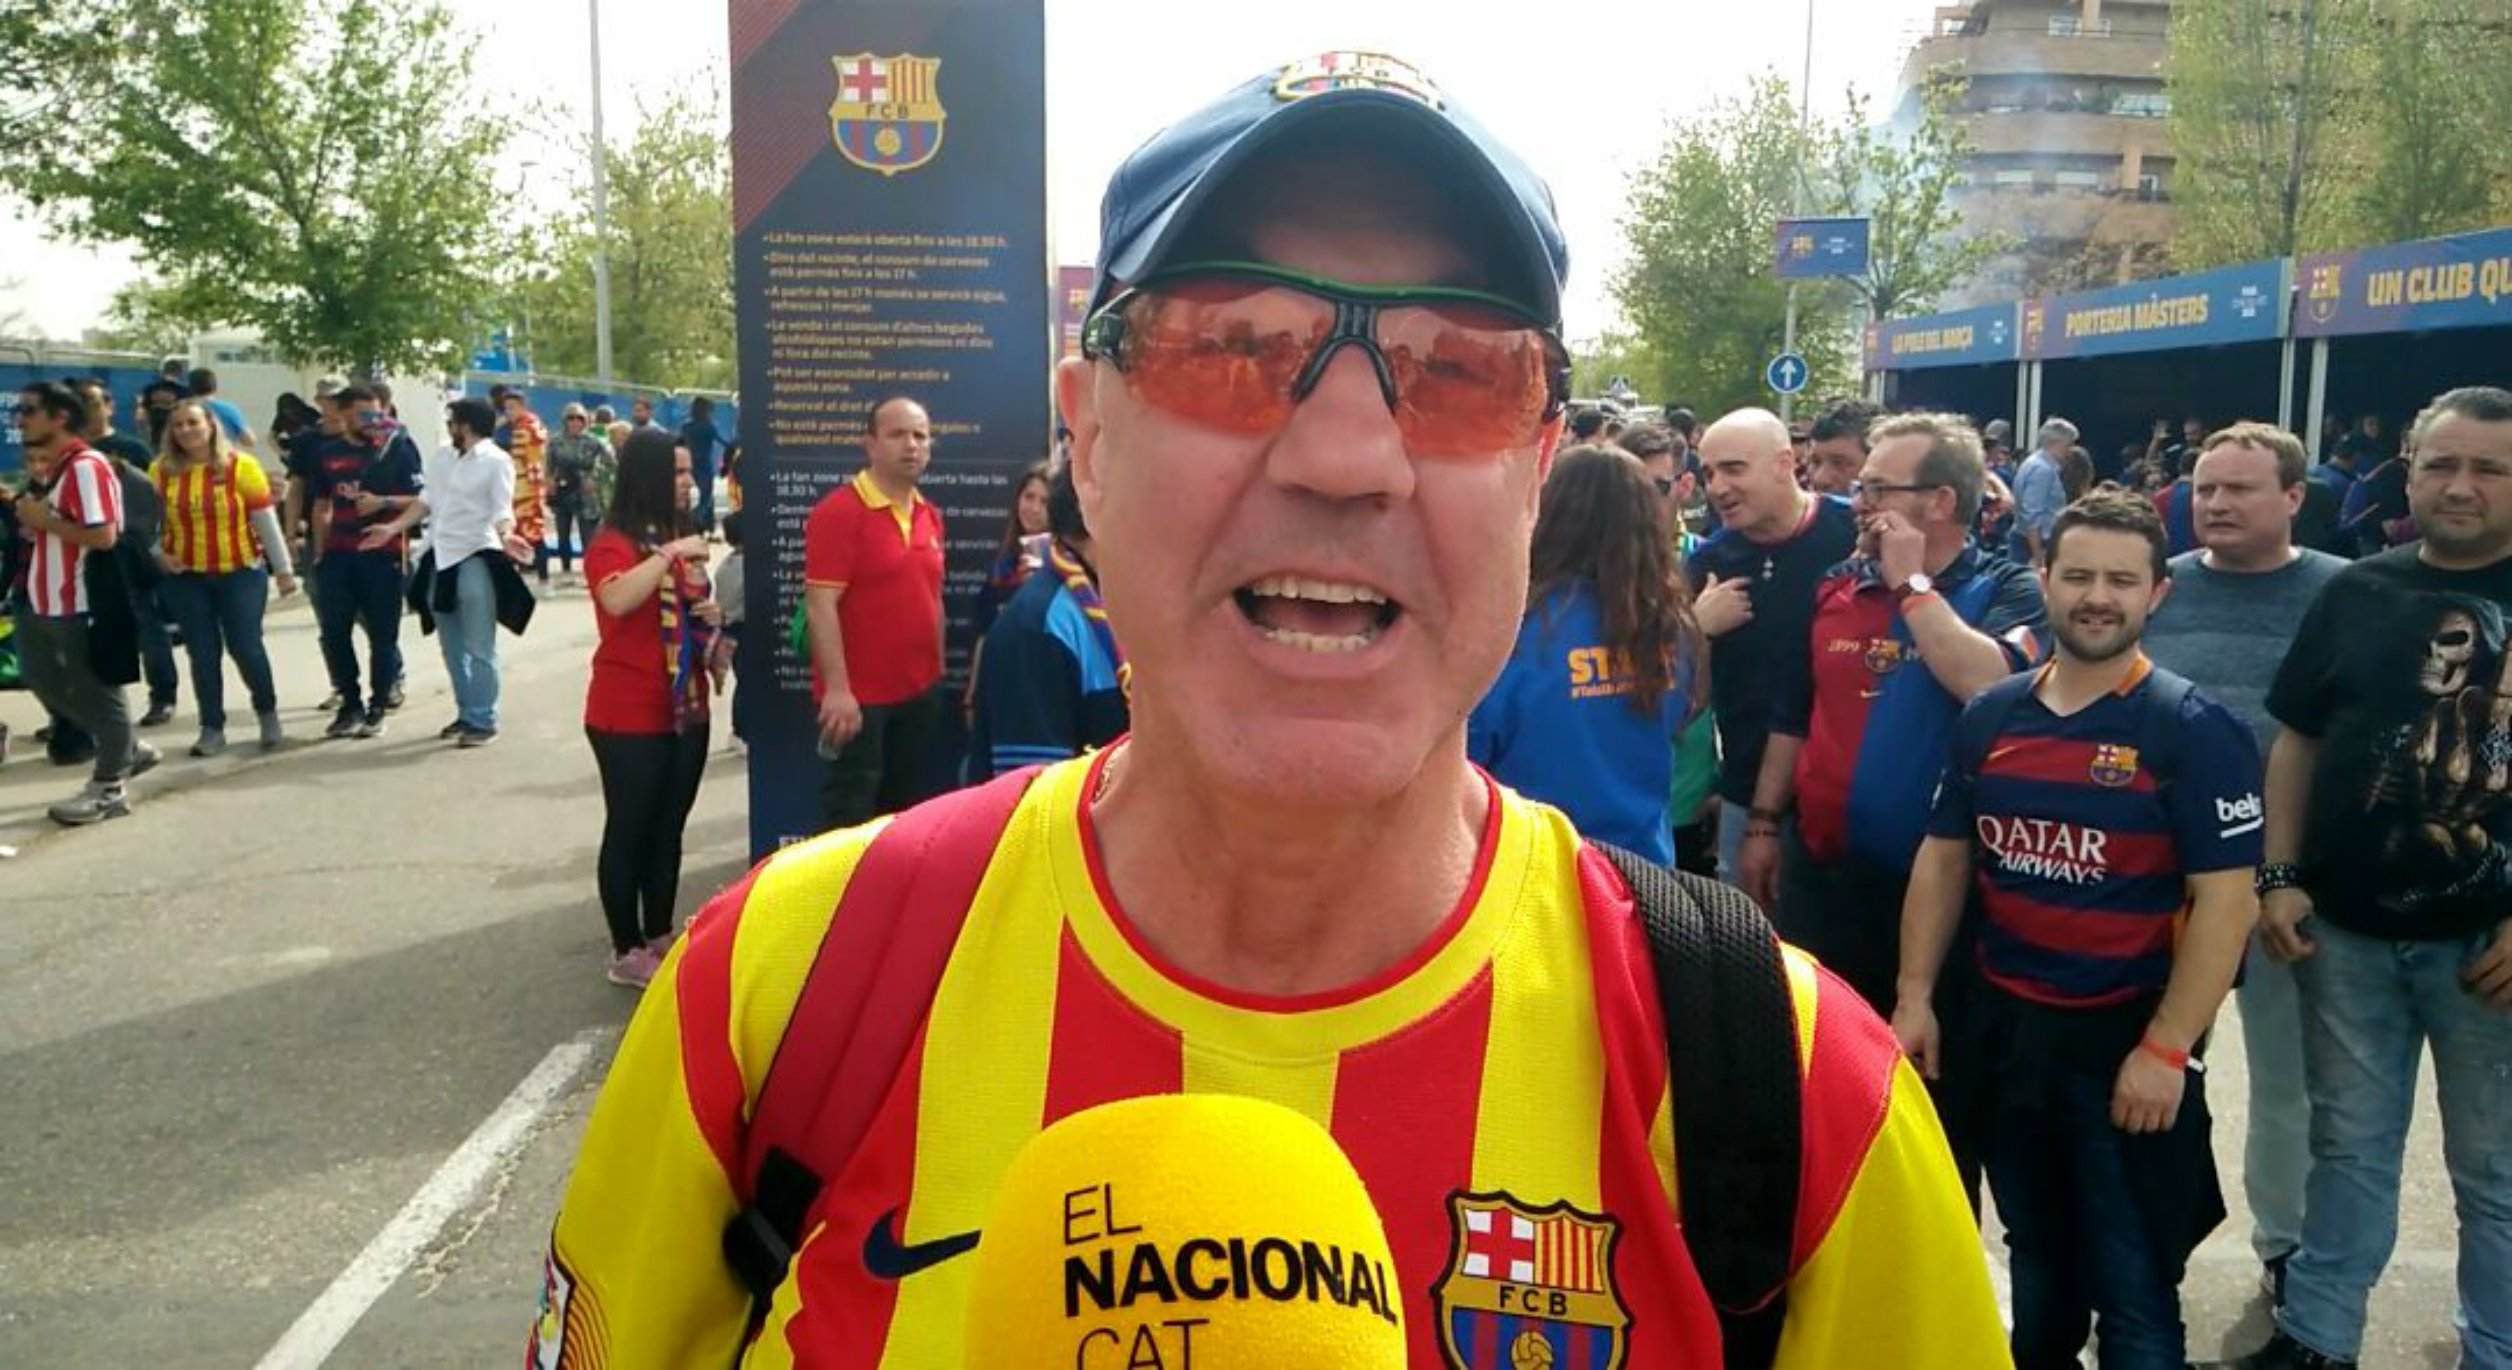 Els culers xiularan l'himne espanyol: "És una injustícia el que passa a Catalunya"